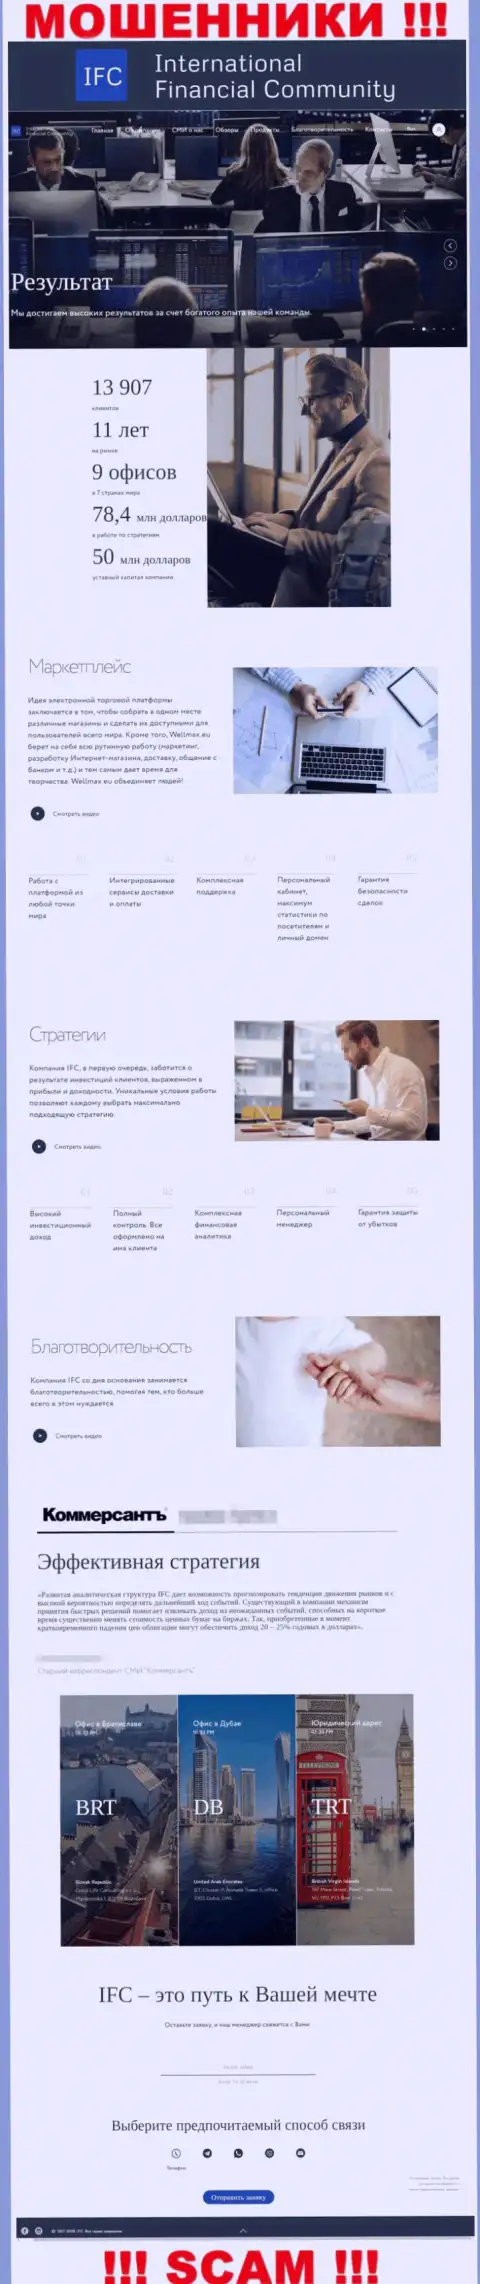 ВМИФК Ком - это официальный web-портал обманщиков WMIFC